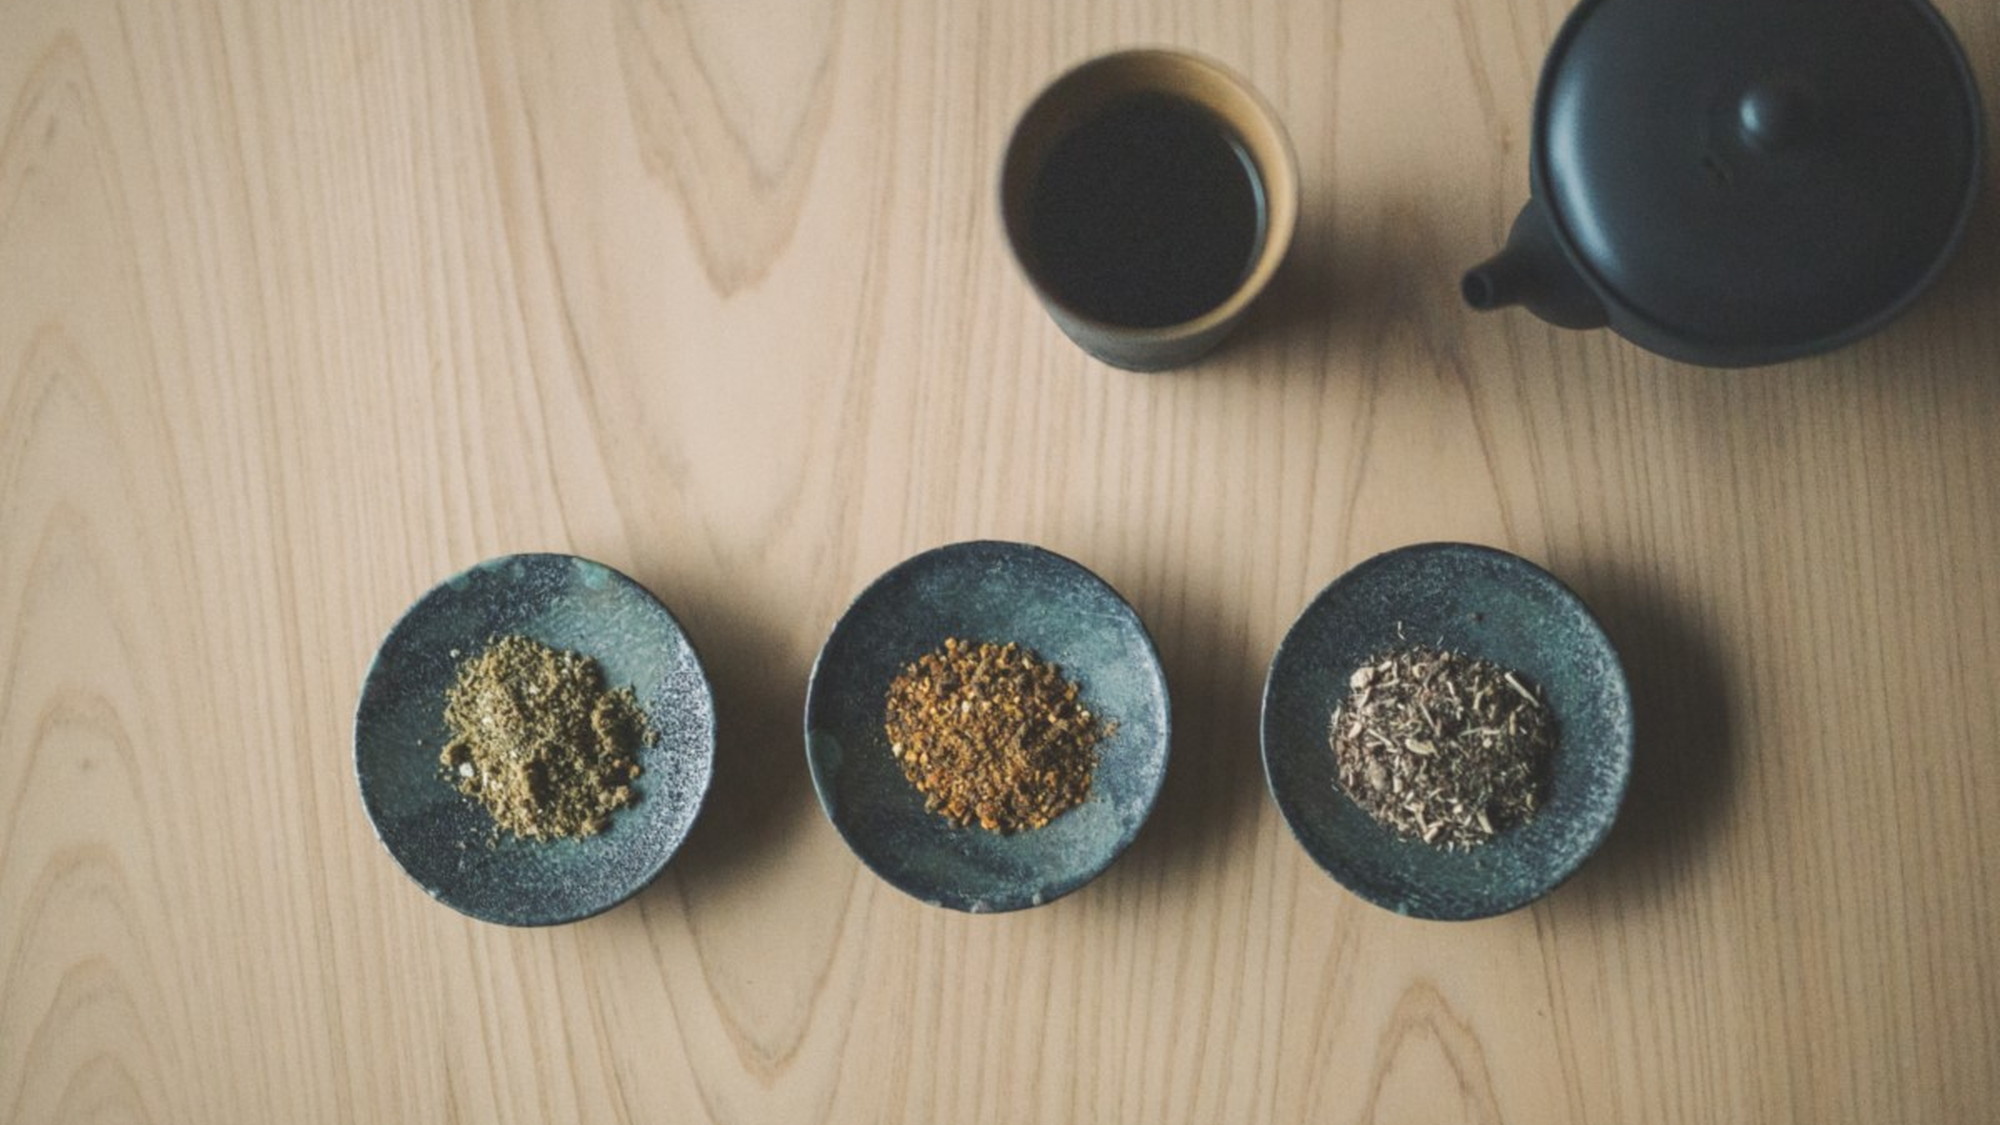 【茶寮】自然治癒力を高める効果が期待できる和漢植物をご用意しております。